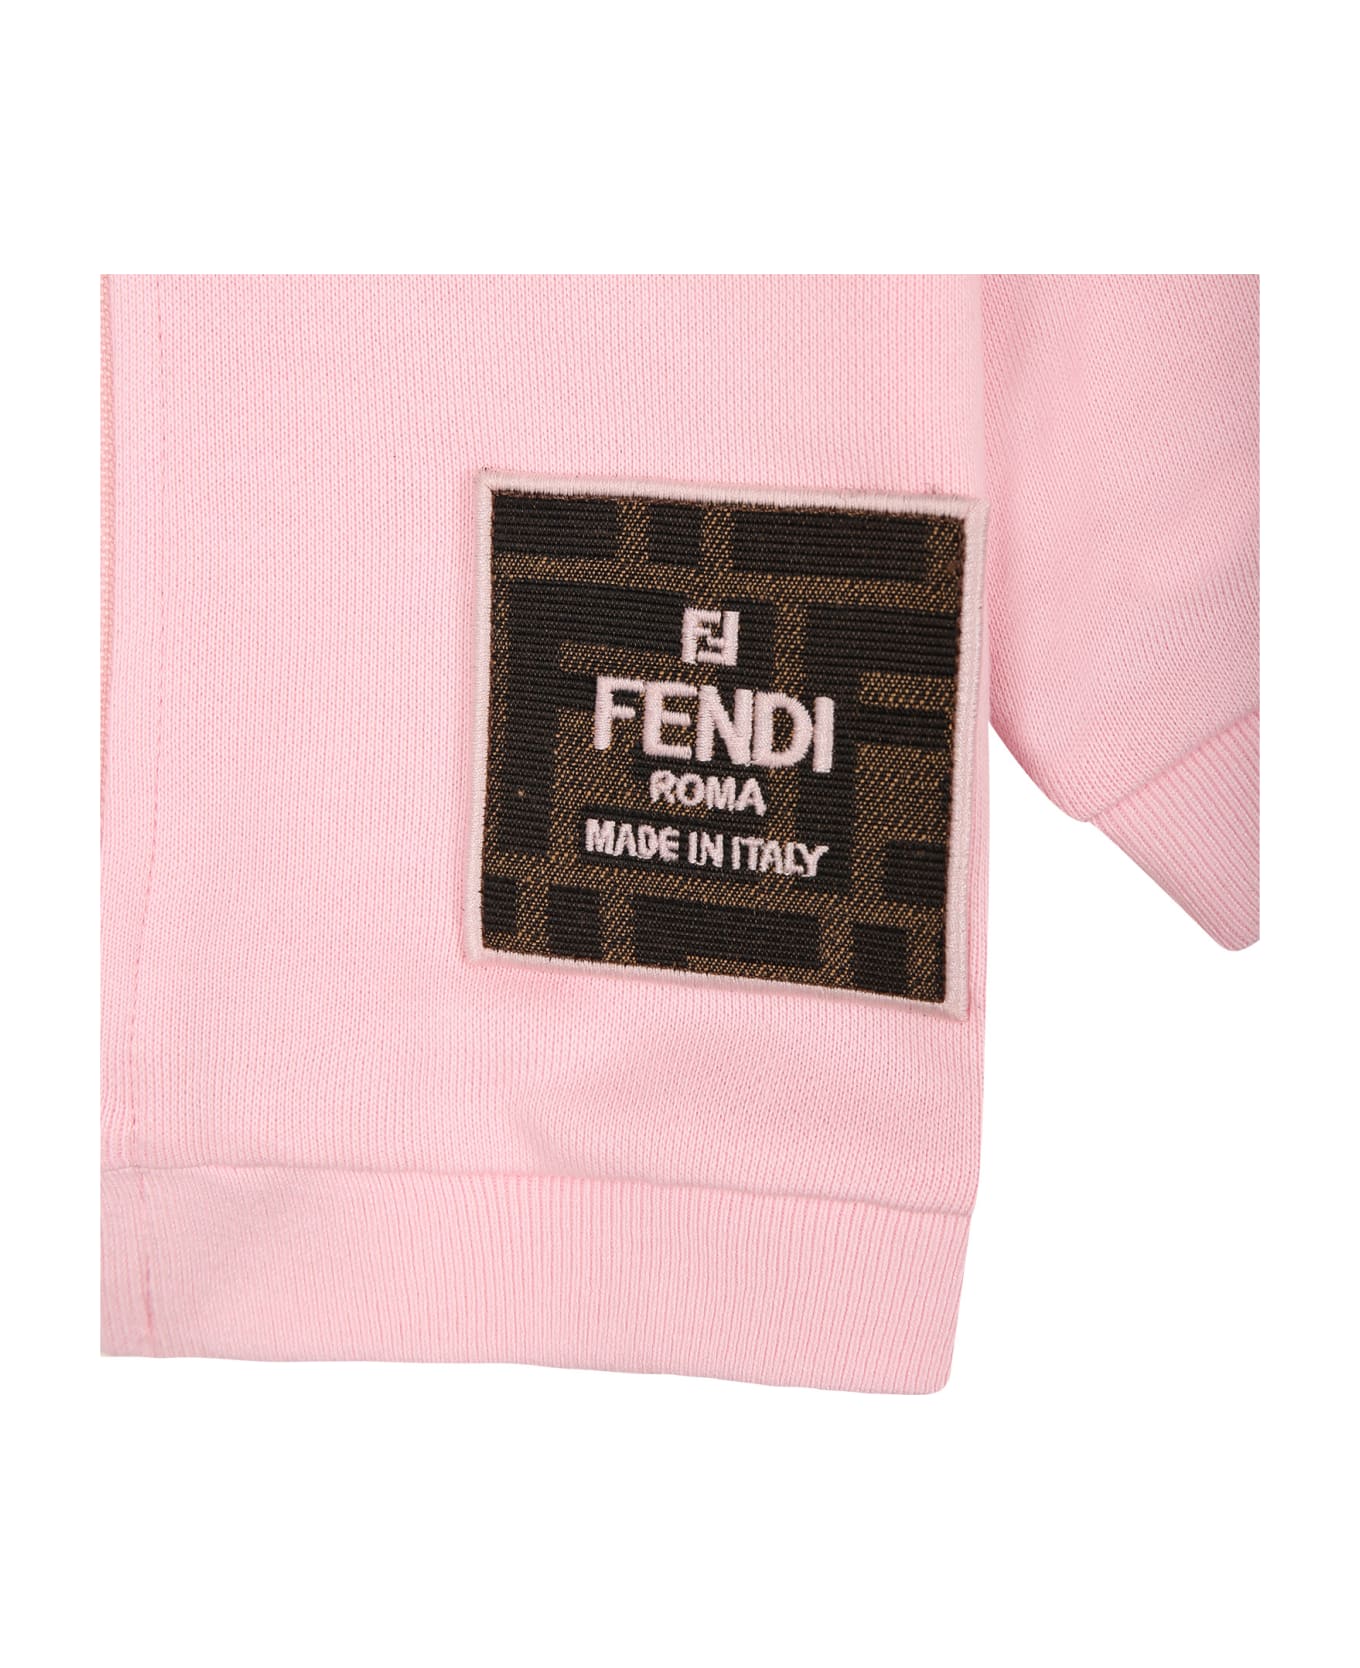 Fendi Pink Sweatshirt For Baby Girl With Logo - Pink